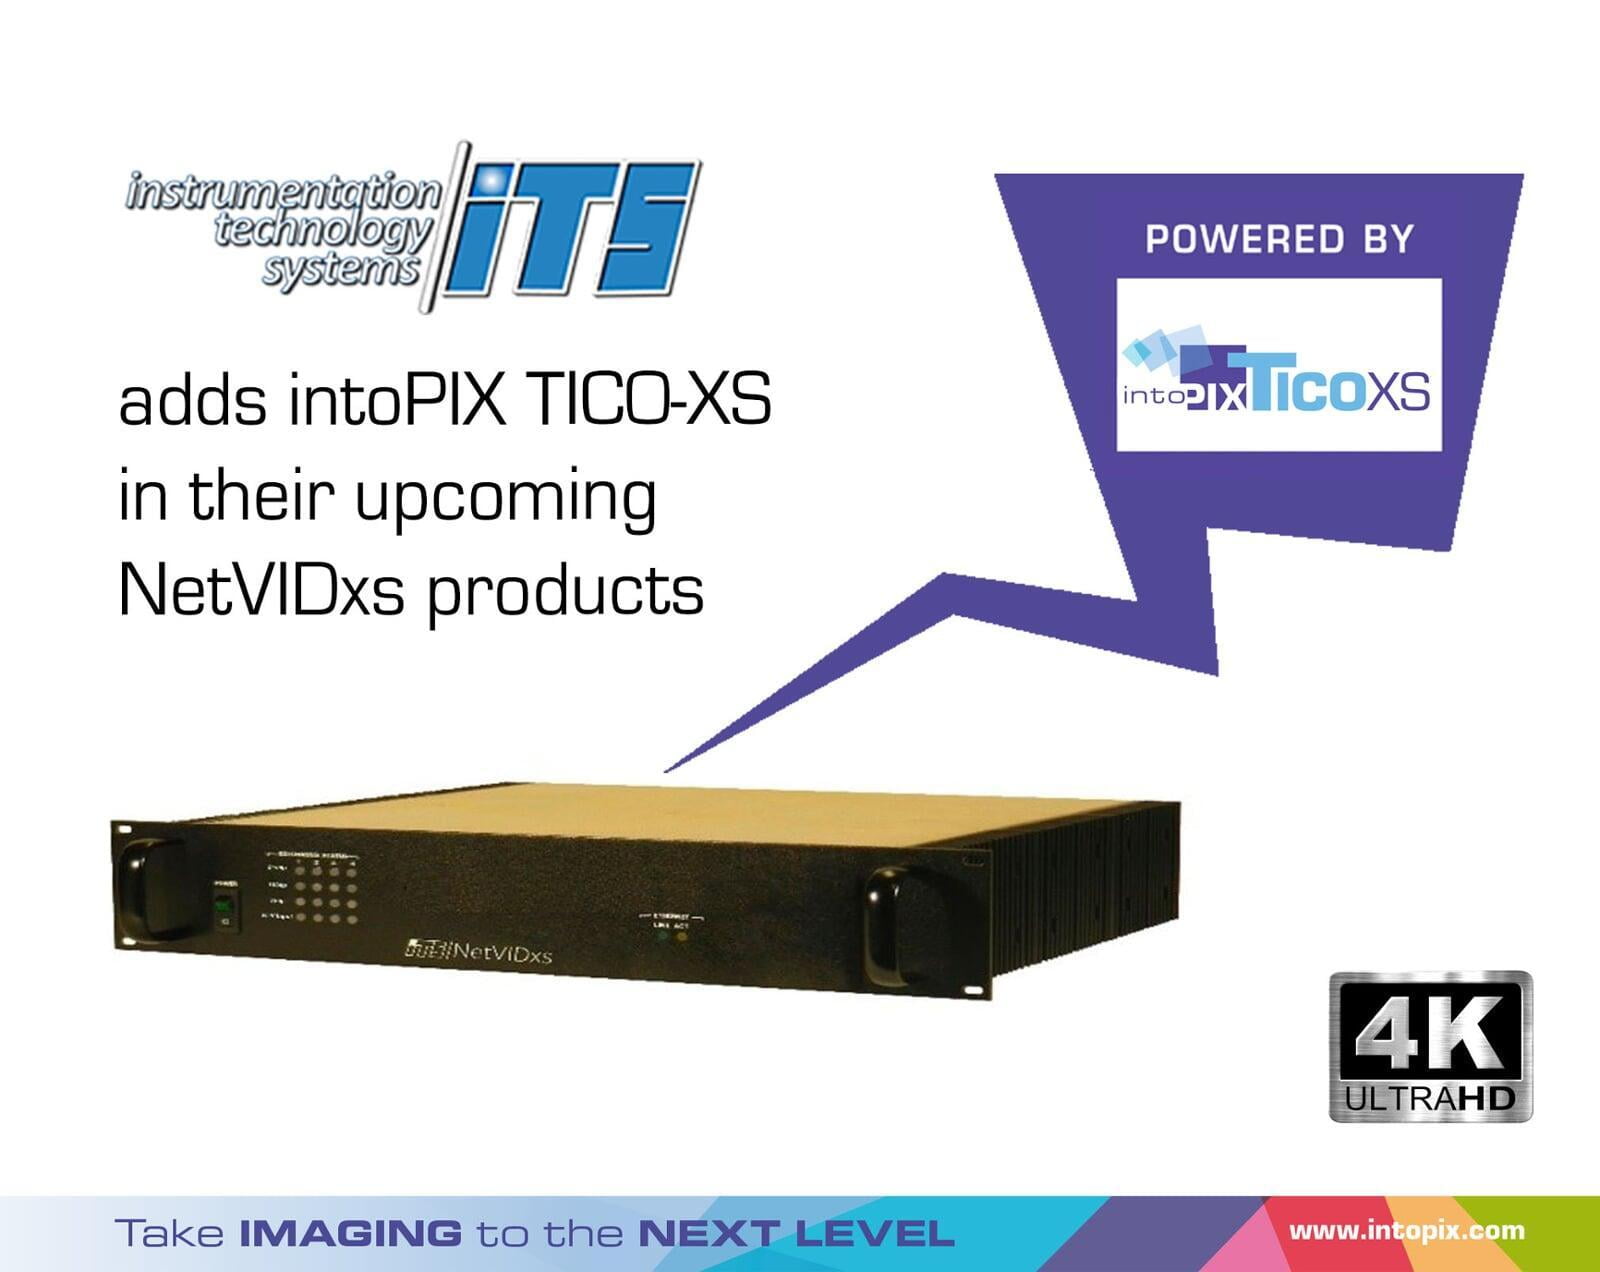 儀器儀錶技術系統增加 intoPIX TicoXS到他們即將推出的NetVIDxs